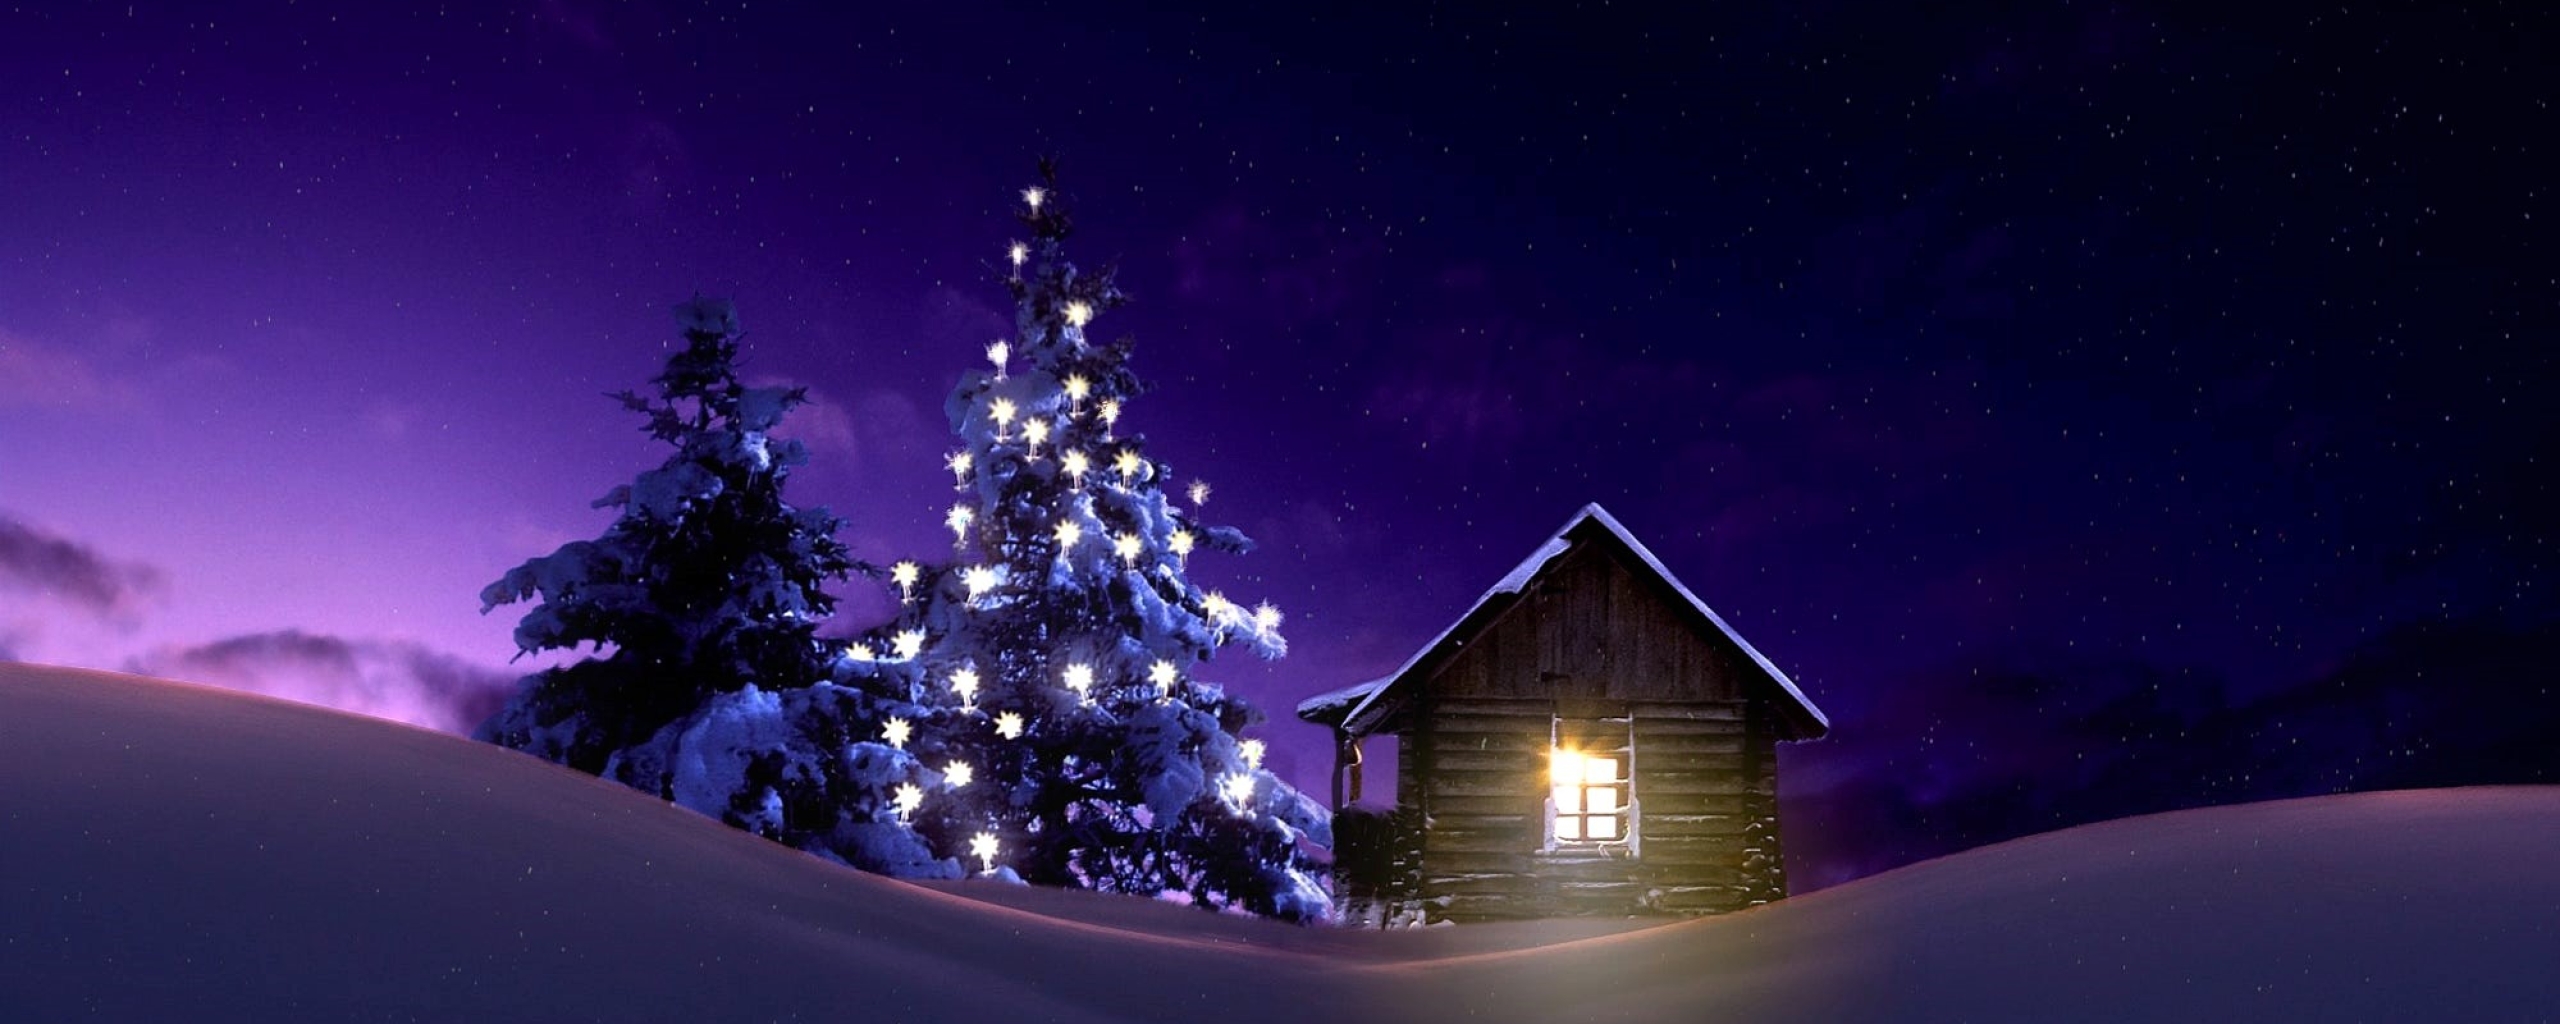 Christmas Lighted Tree Outside Winter Cabin, Full HD 2K Wallpaper